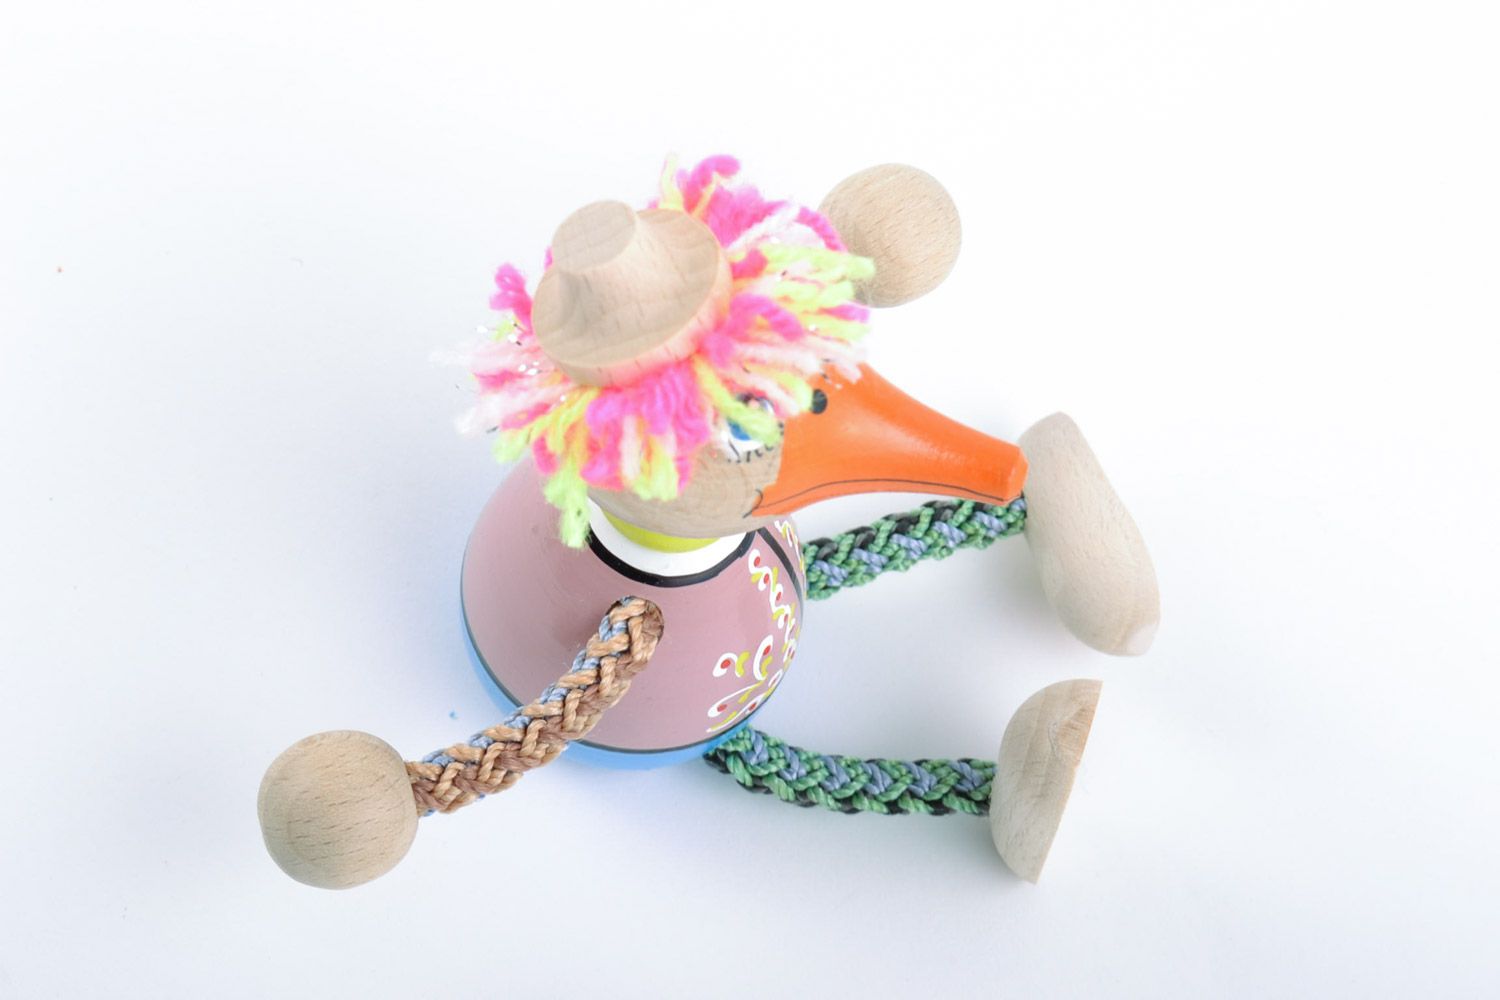 Красочная деревянная игрушка в виде утки ручной работы расписанная эко красками фото 4